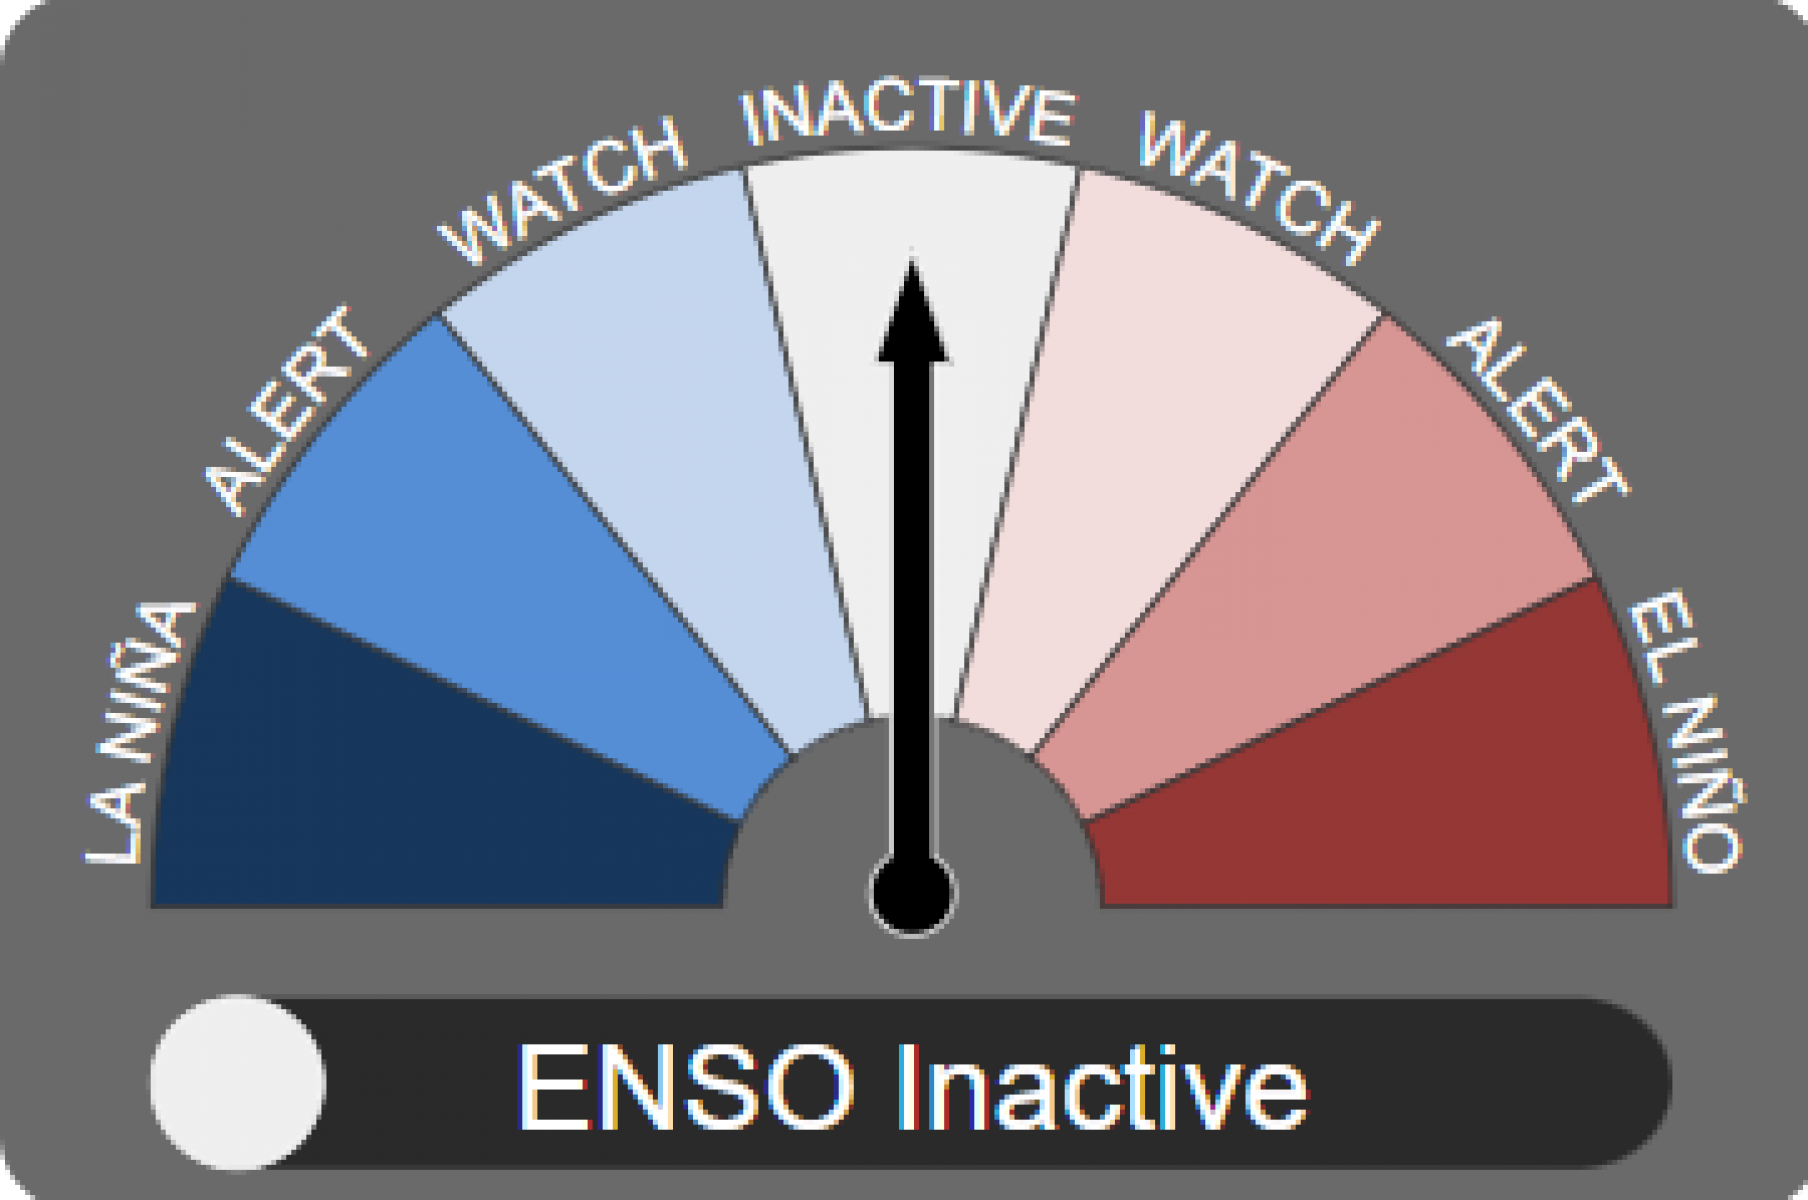 ENSO outlook set to neutral status